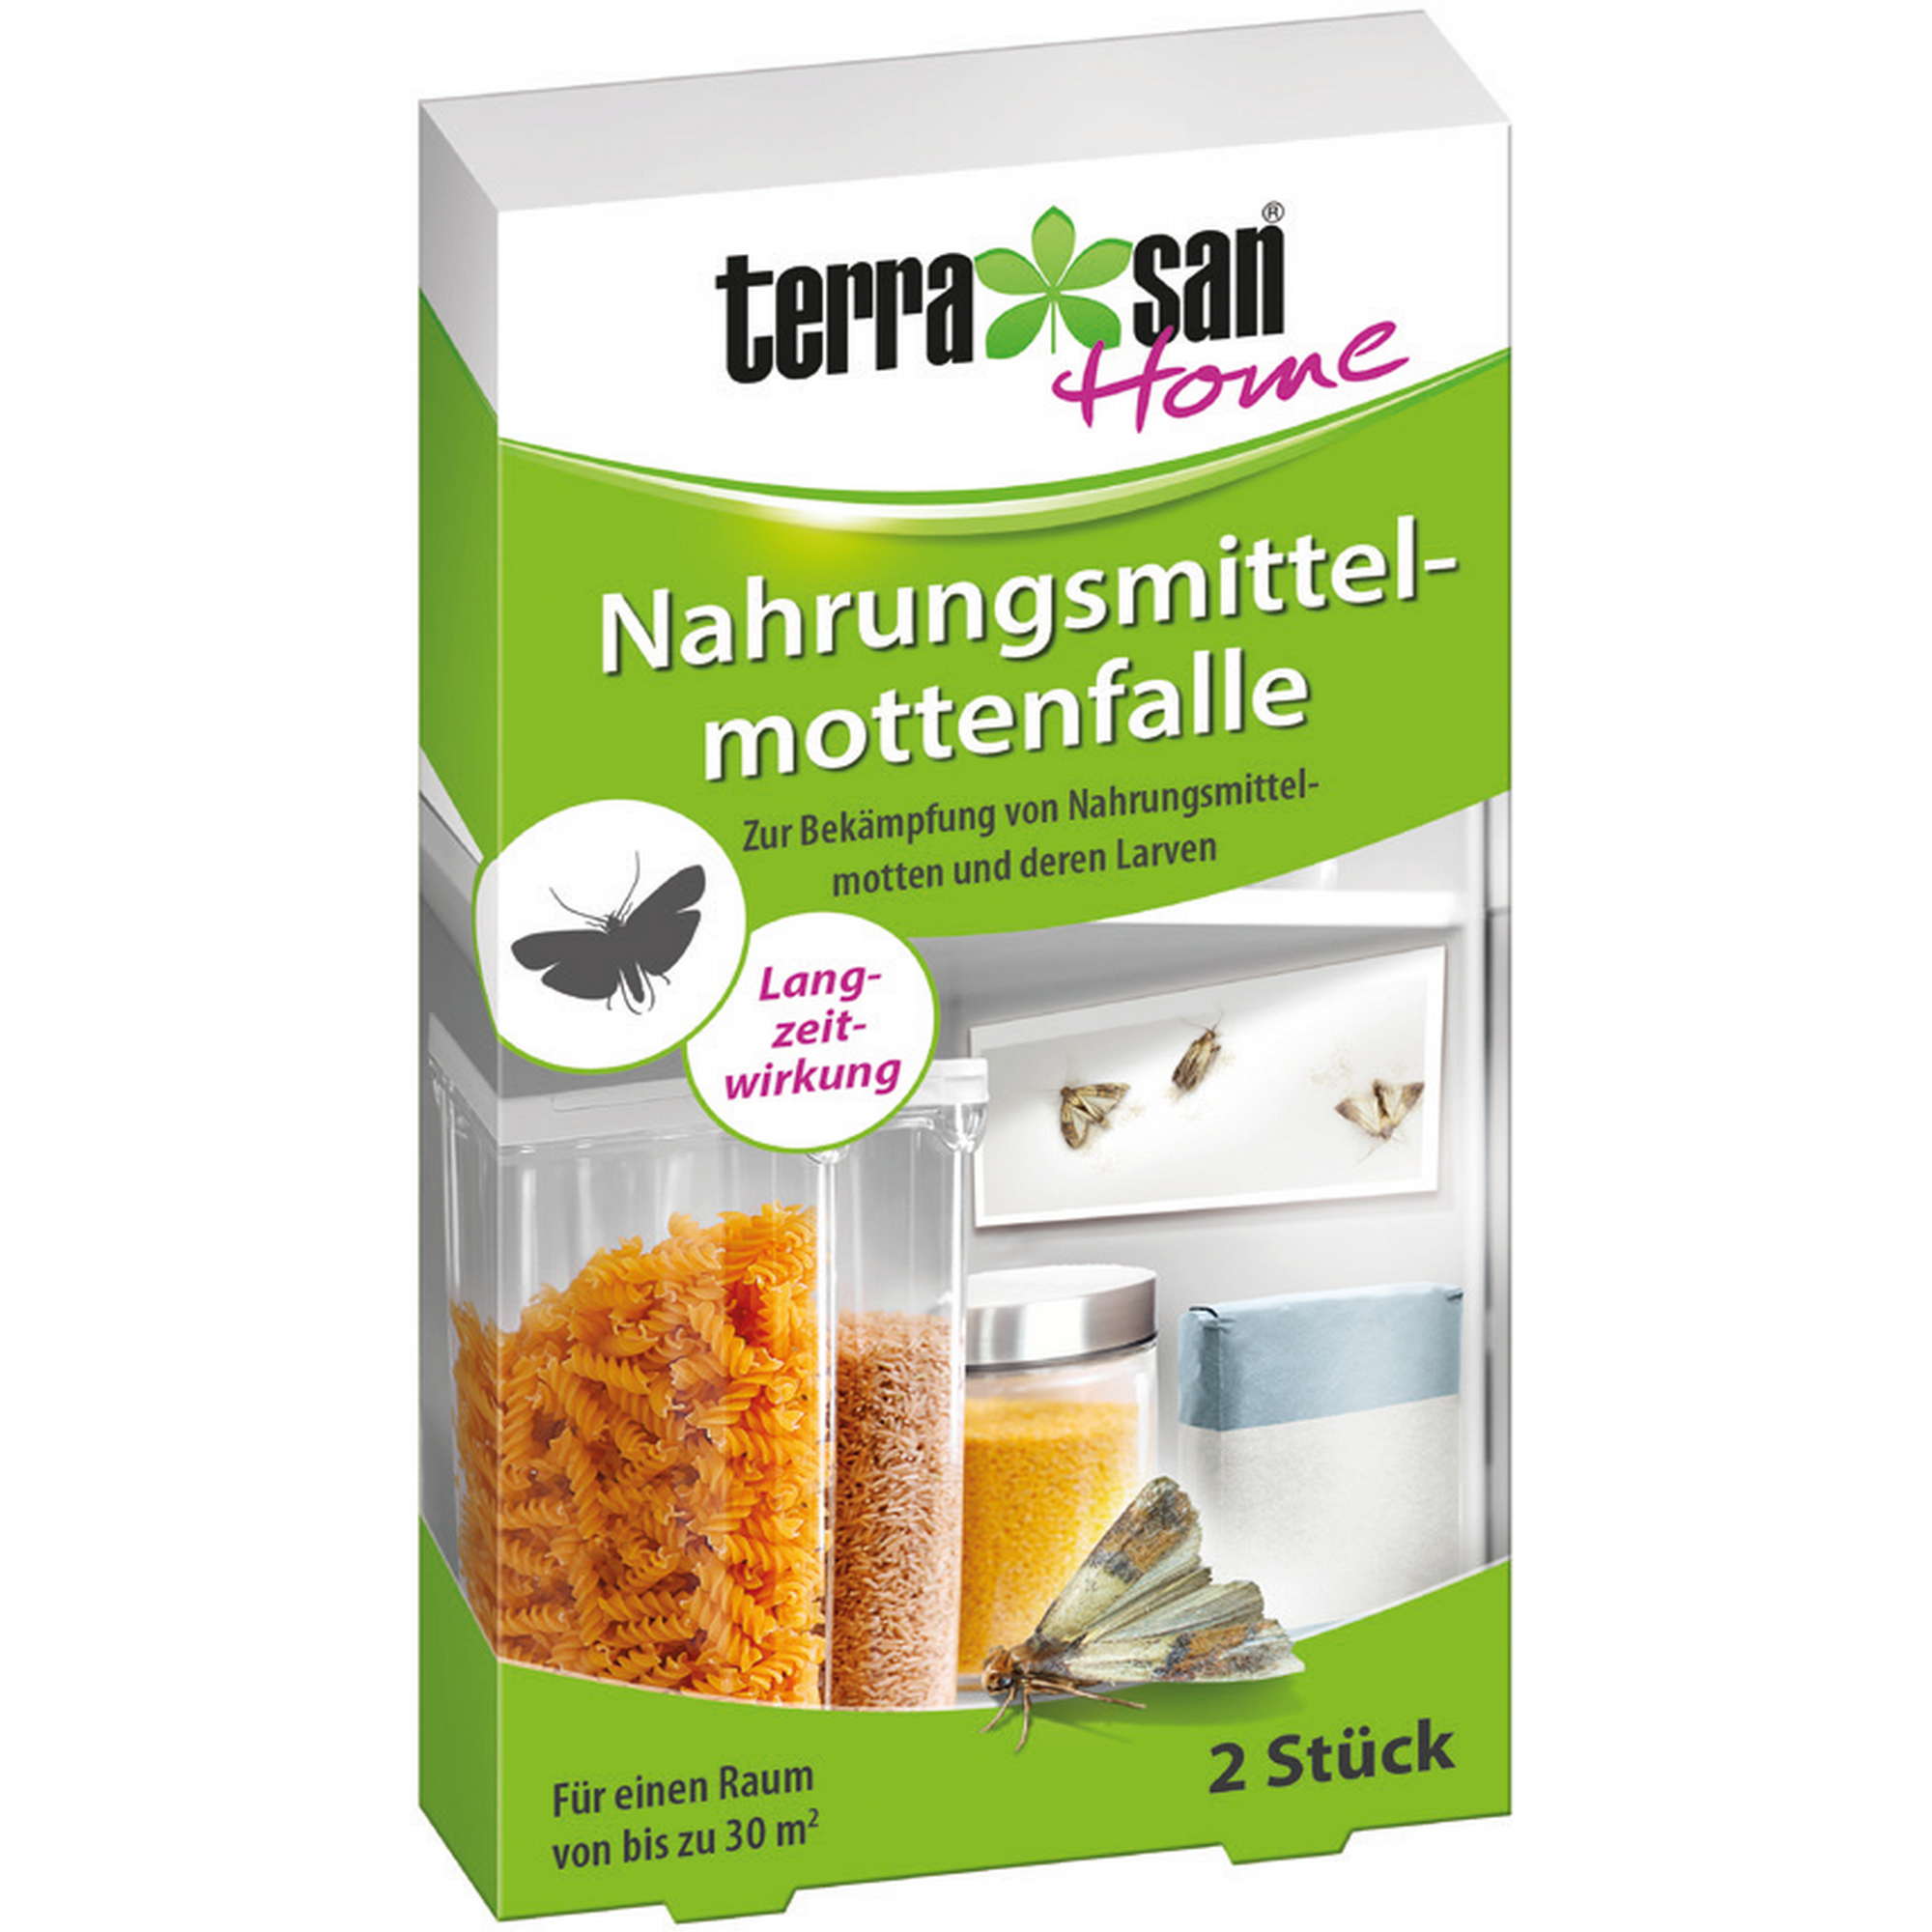 terrasan Home Nahrungsmittelmotten-Falle 2 Stück + product picture